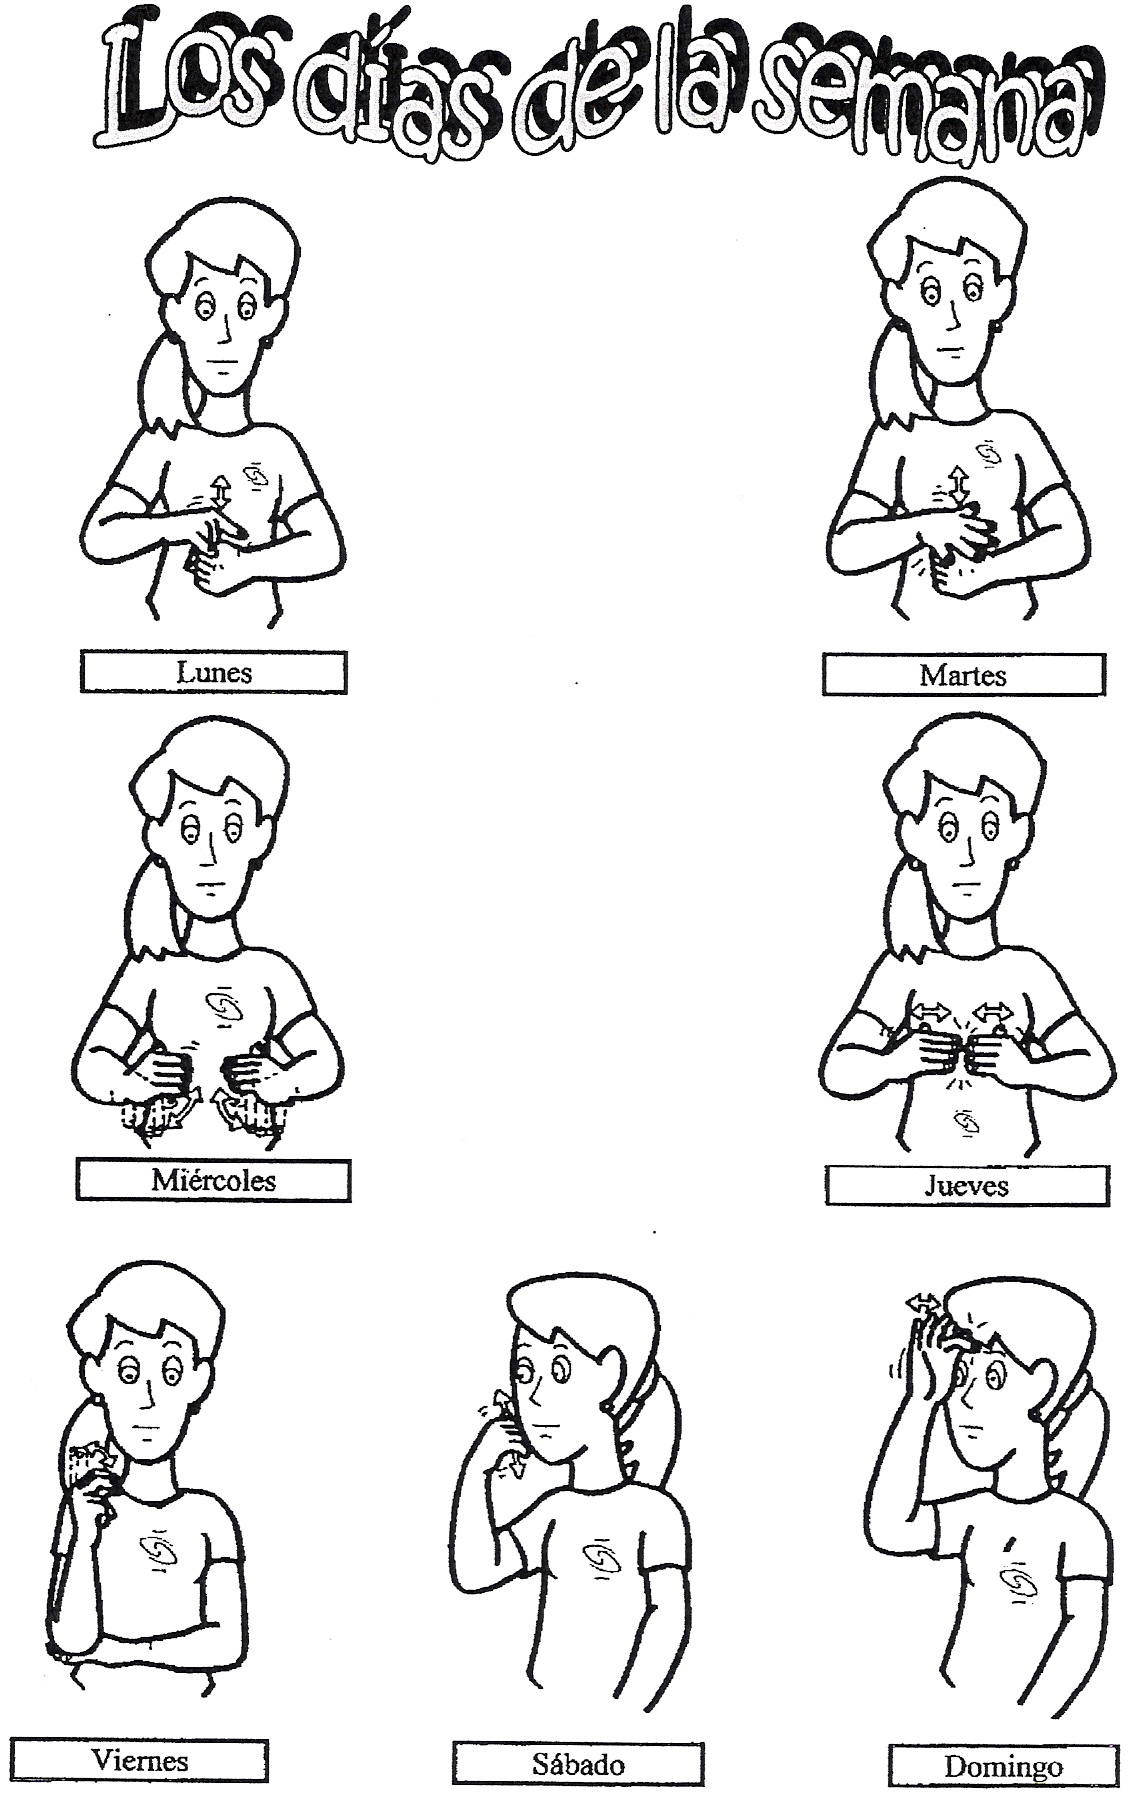 Los días de la semana en Lengua de Signos (dibujos) - Aprende Lengua de  Signos Española